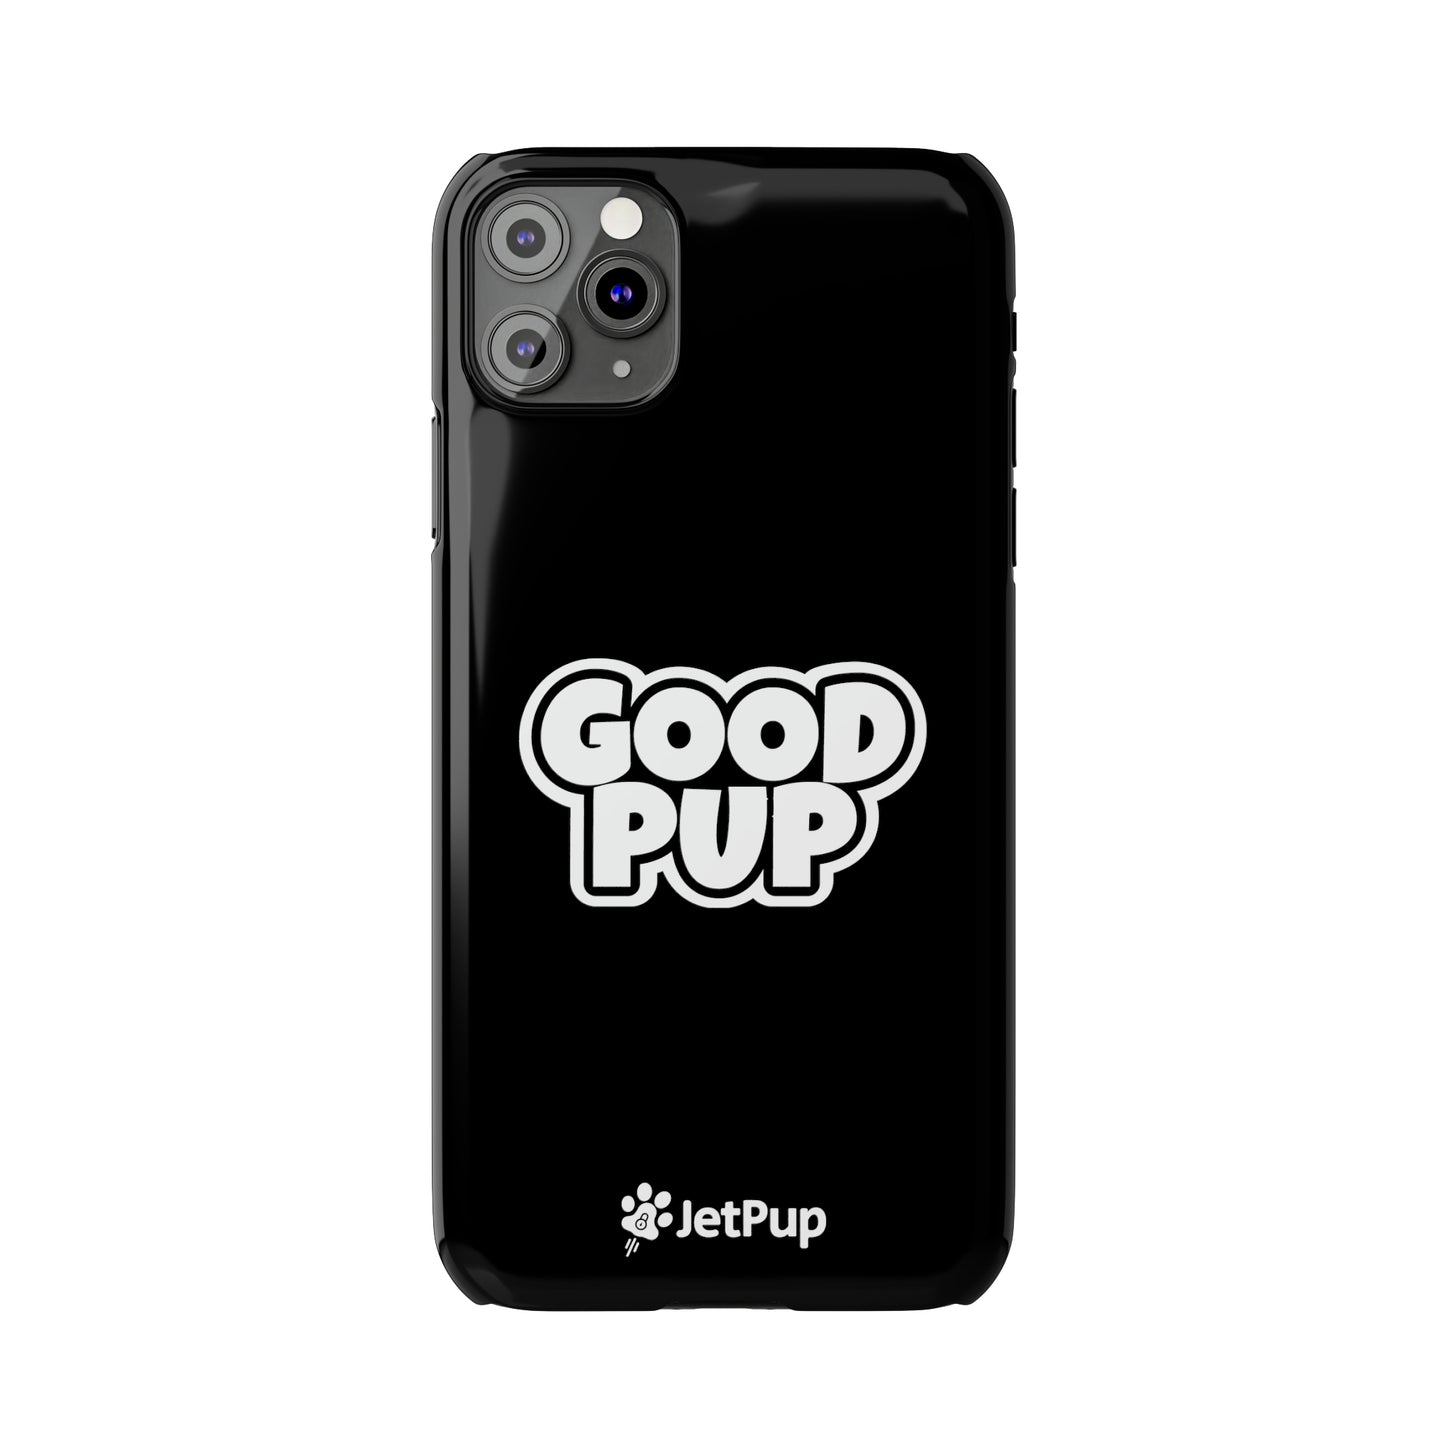 Good Pup Slim iPhone Cases - Black